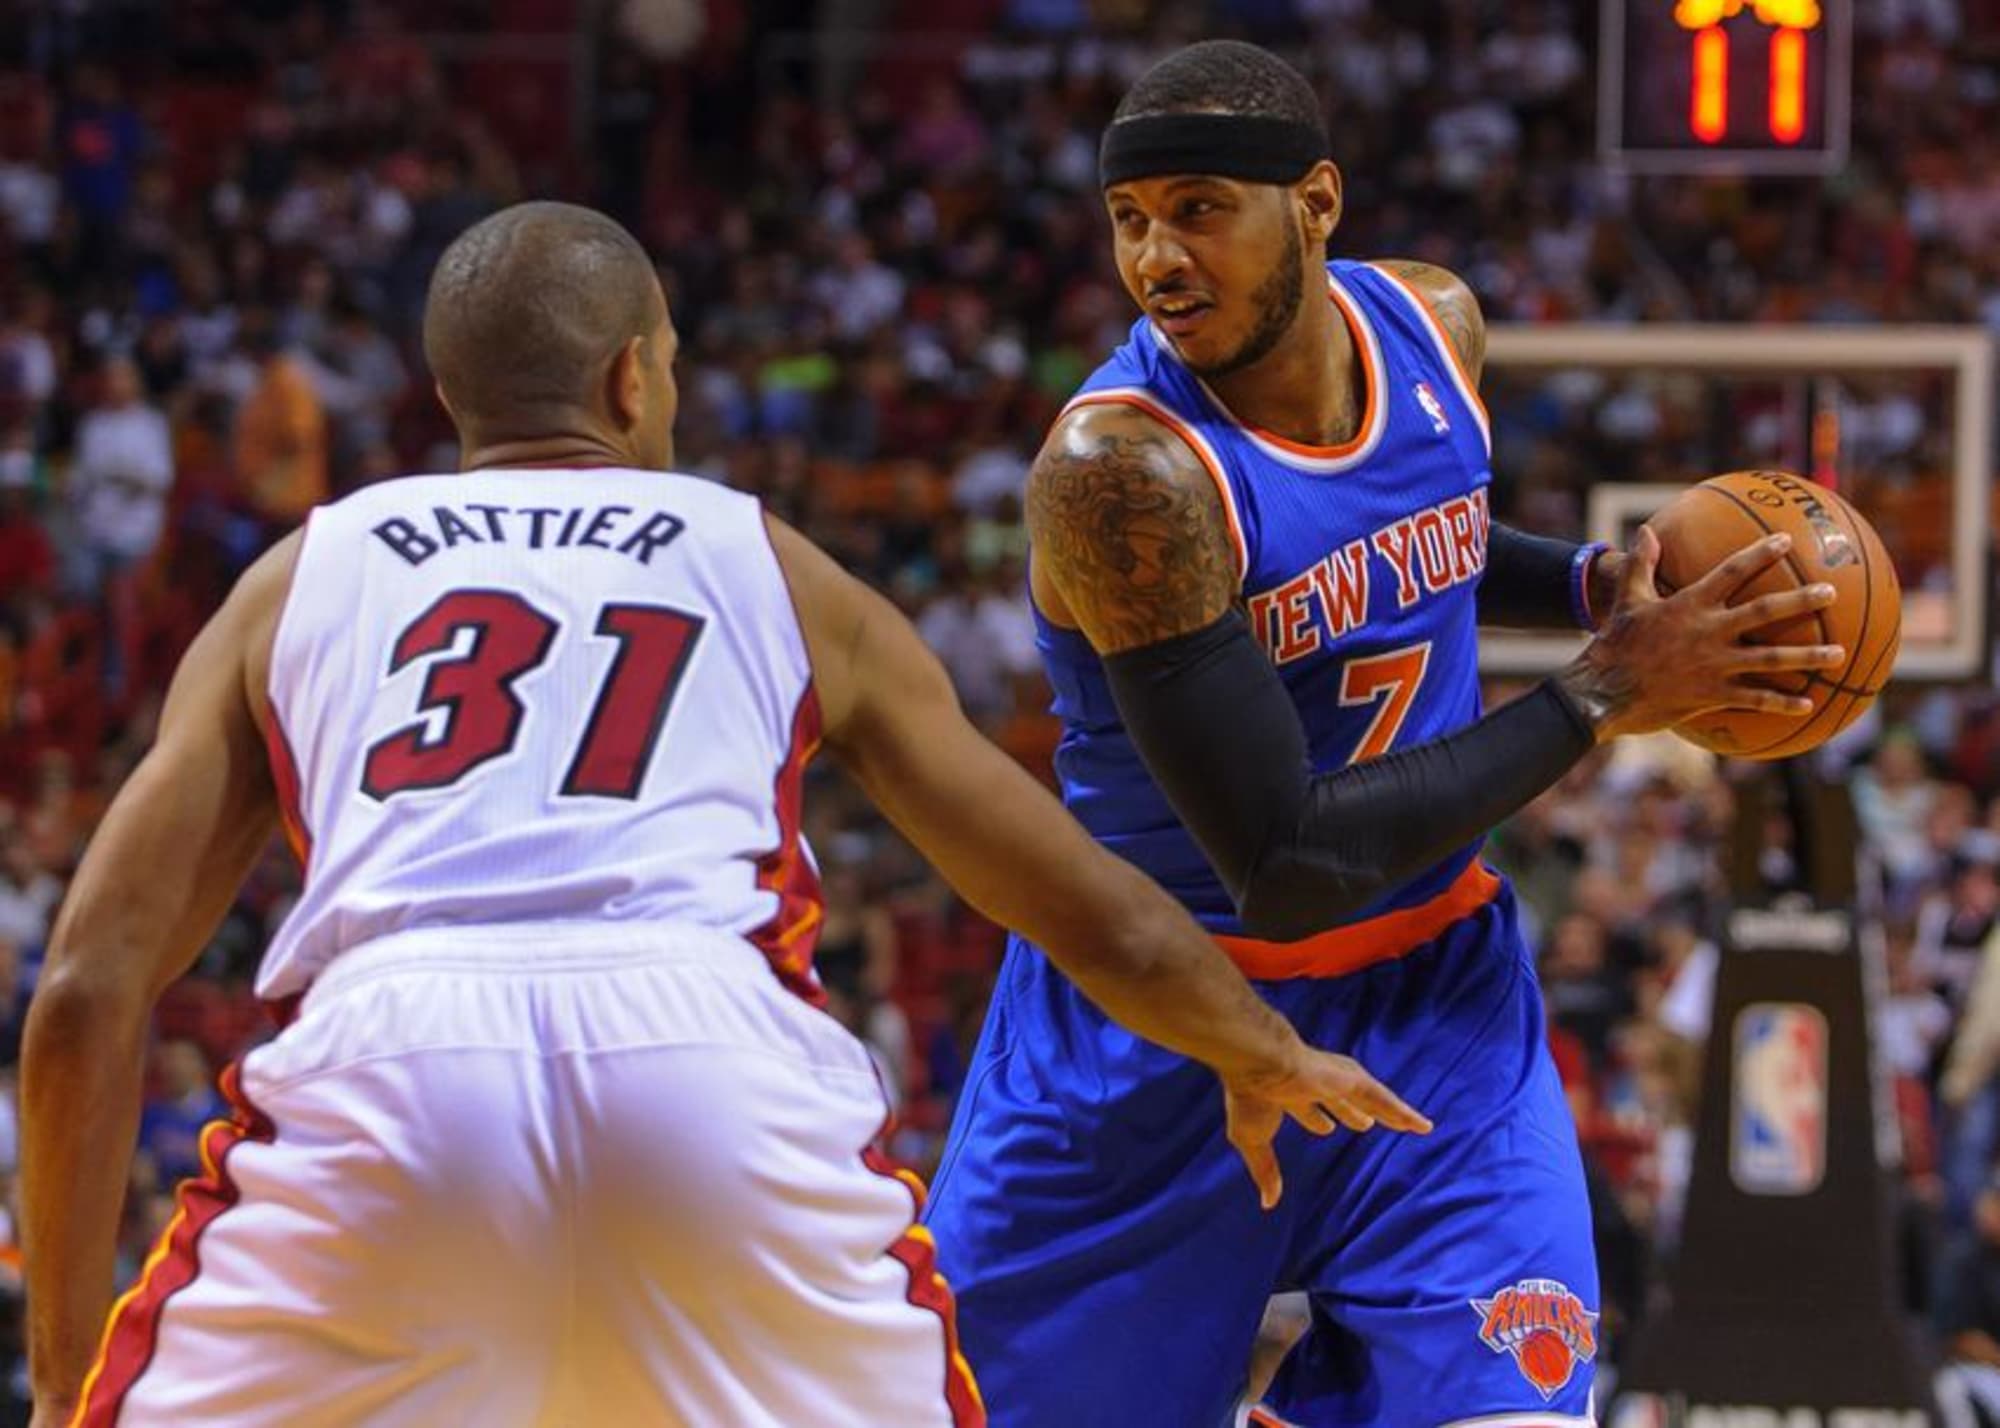 Carmelo Anthony spurs Knicks to win over Mavericks